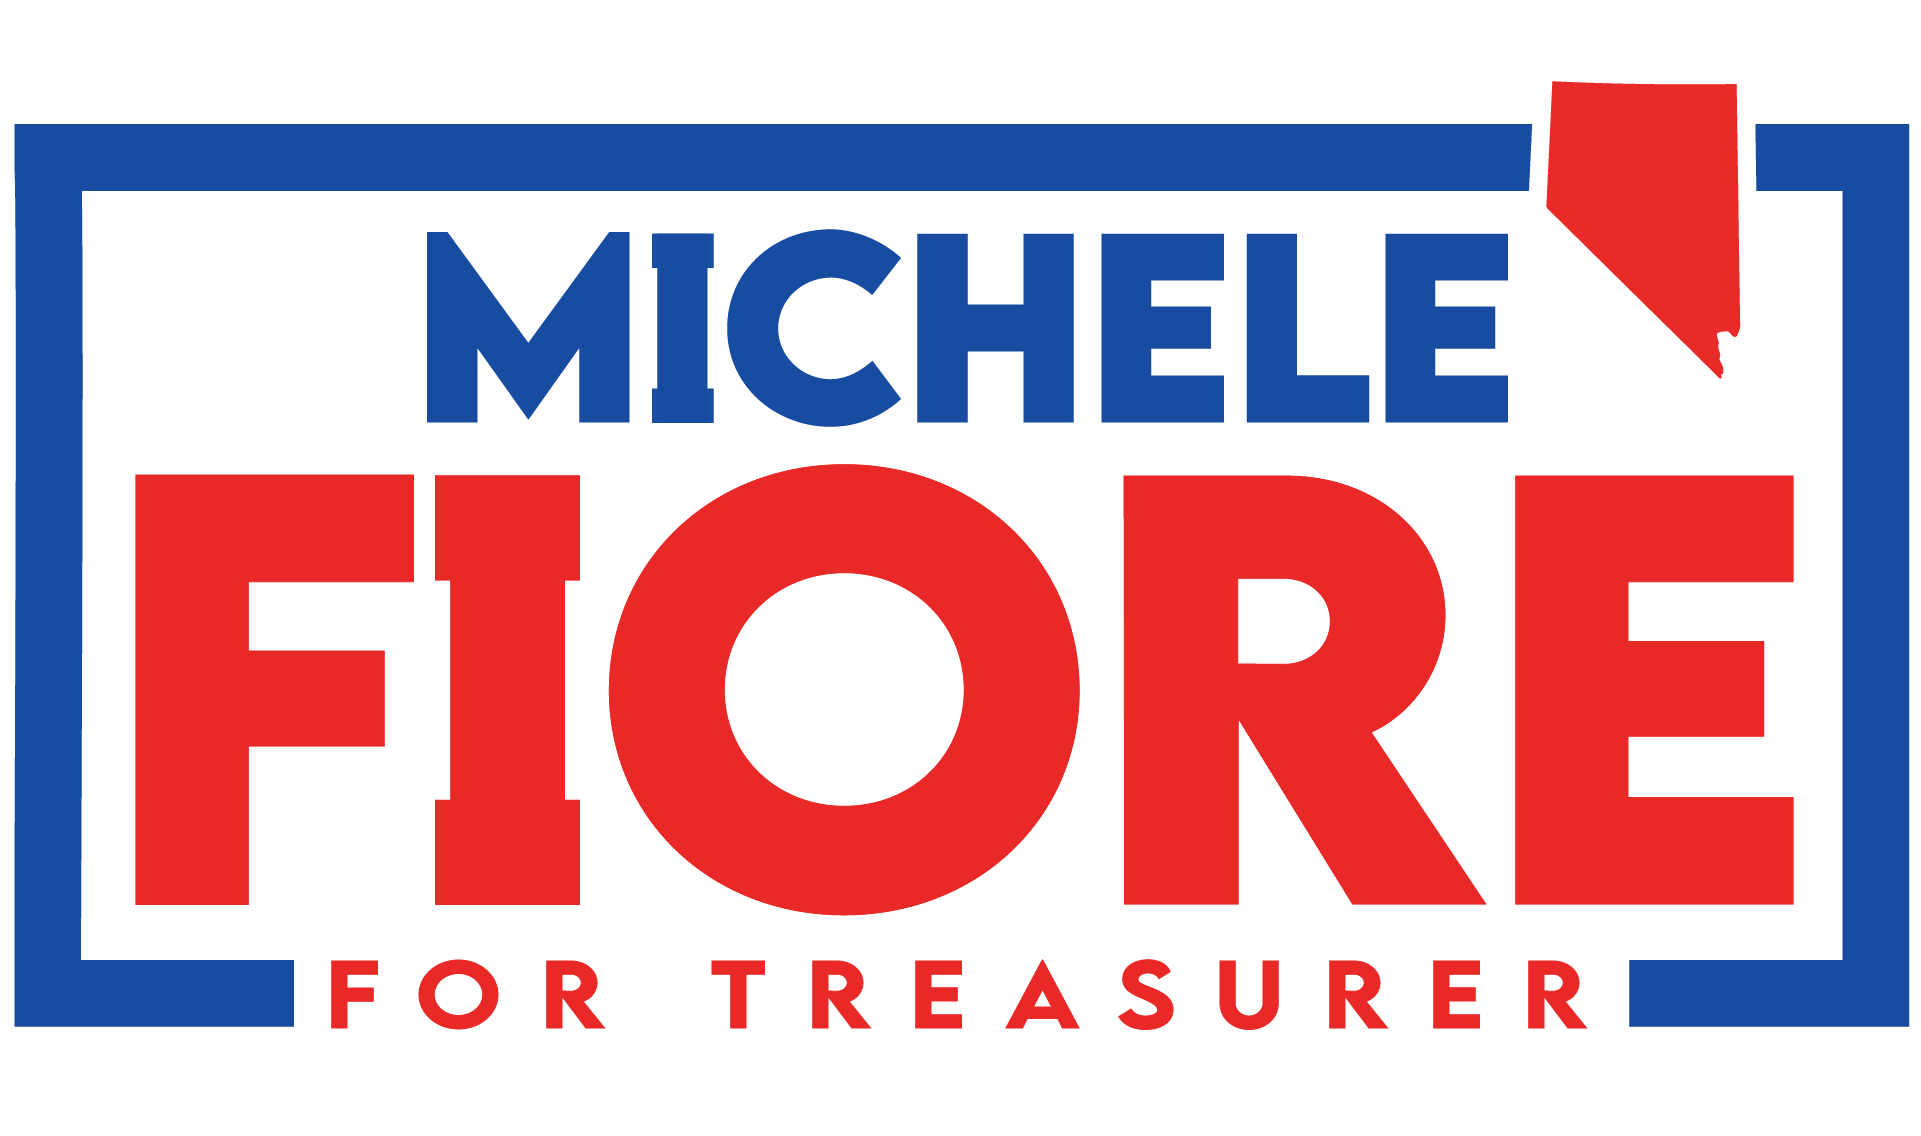 Michele Fiore For Treasurer